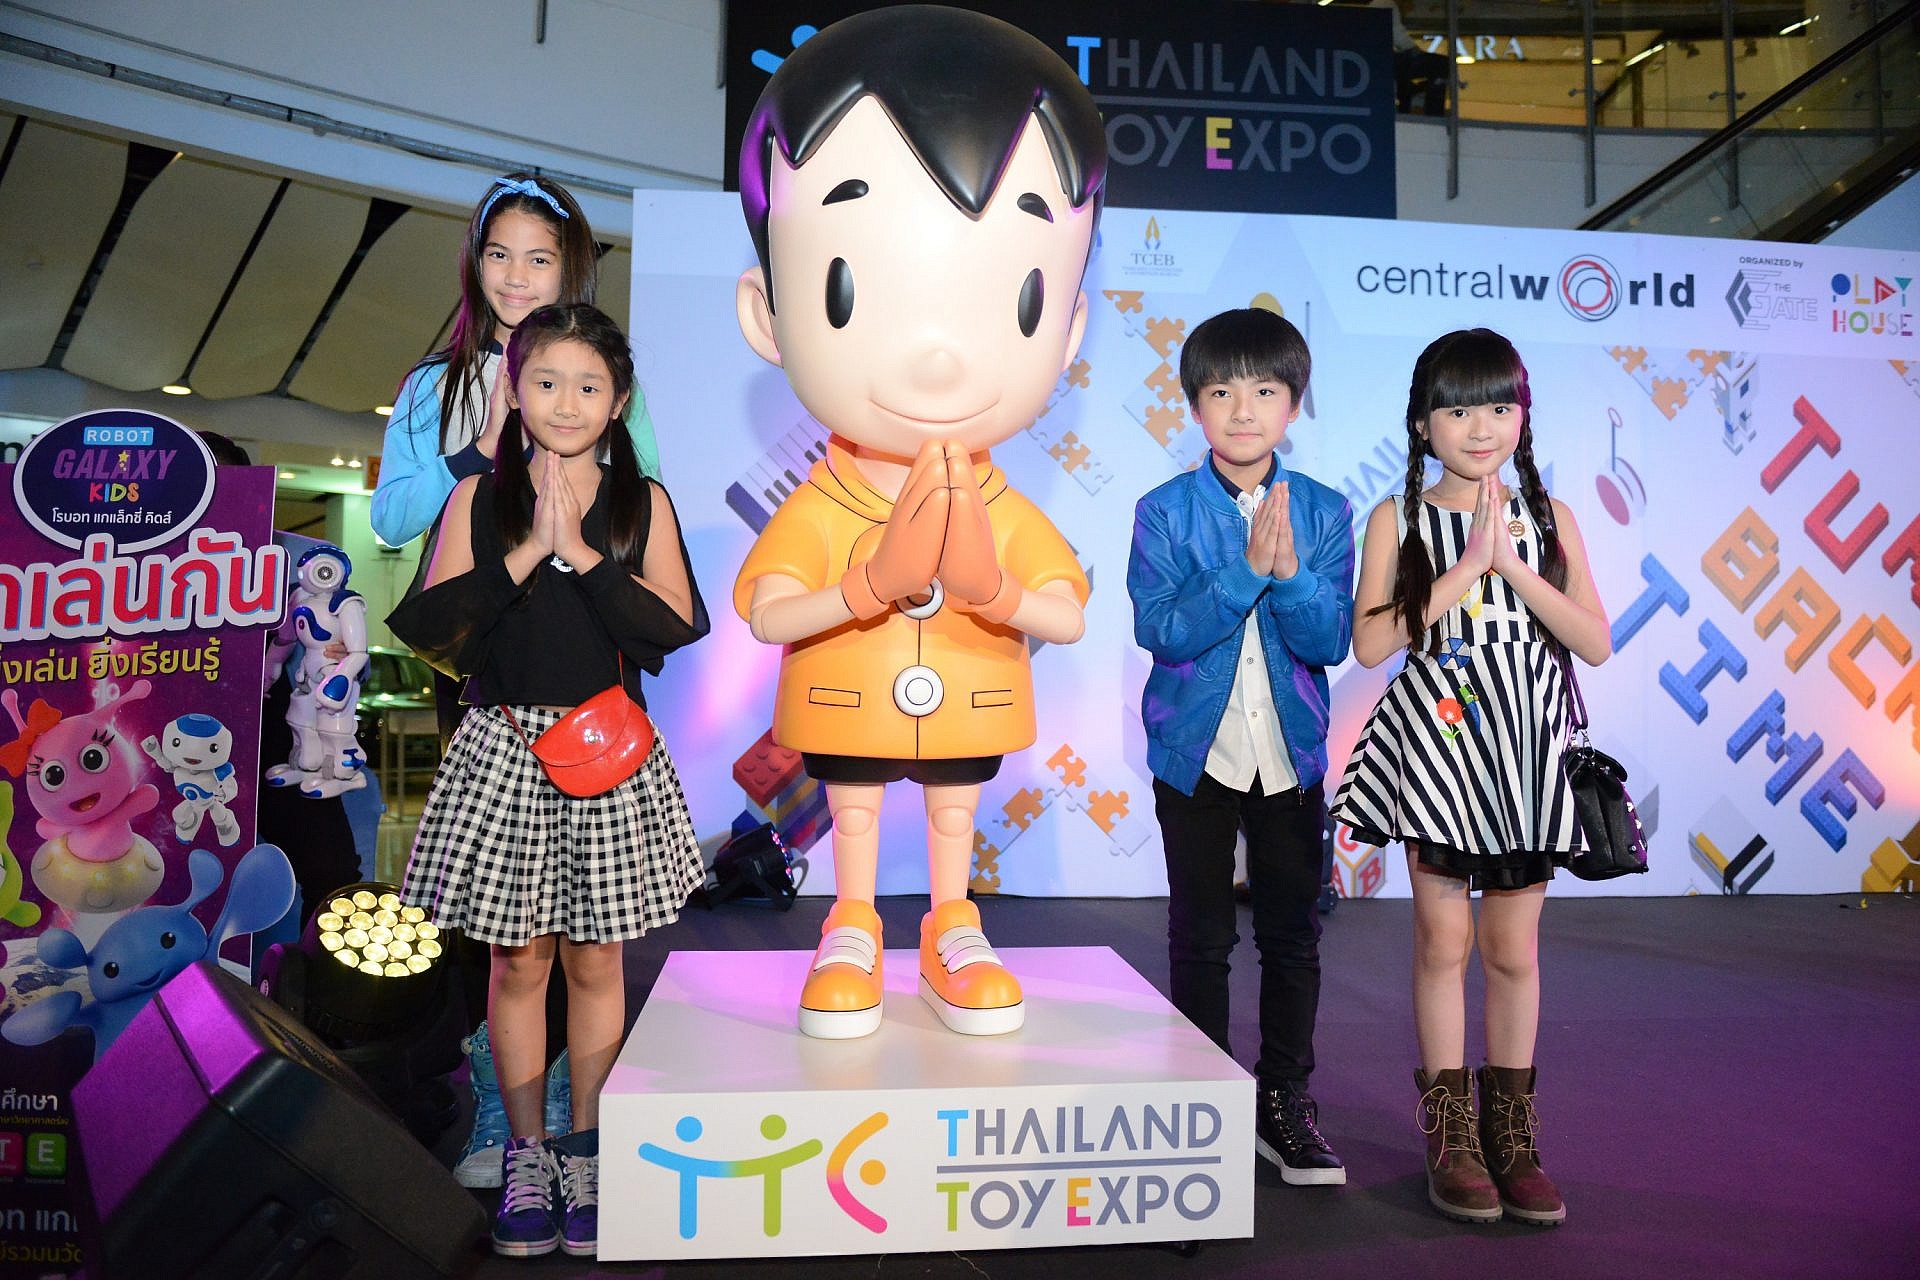 มาว้าวกับเล่นแบรนด์ดังทั่วโลกในงาน Thailand Toy Expo 2016 ถึงวันที่ 8 พ.ค. นี้ !!